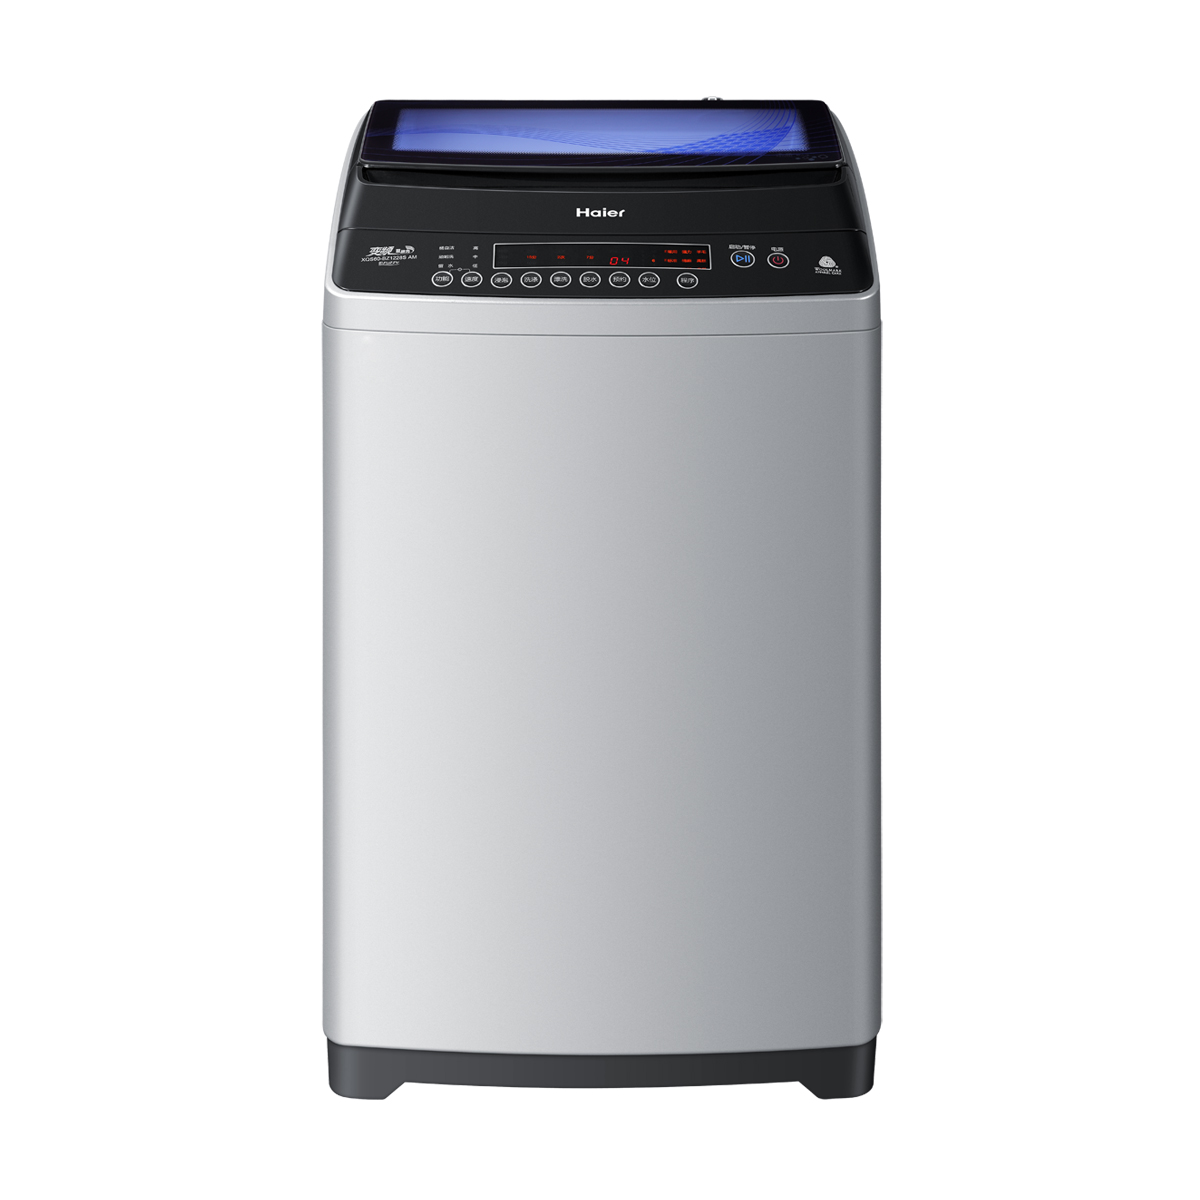 海尔Haier洗衣机 XQS60-BZ1228S(AM) 说明书